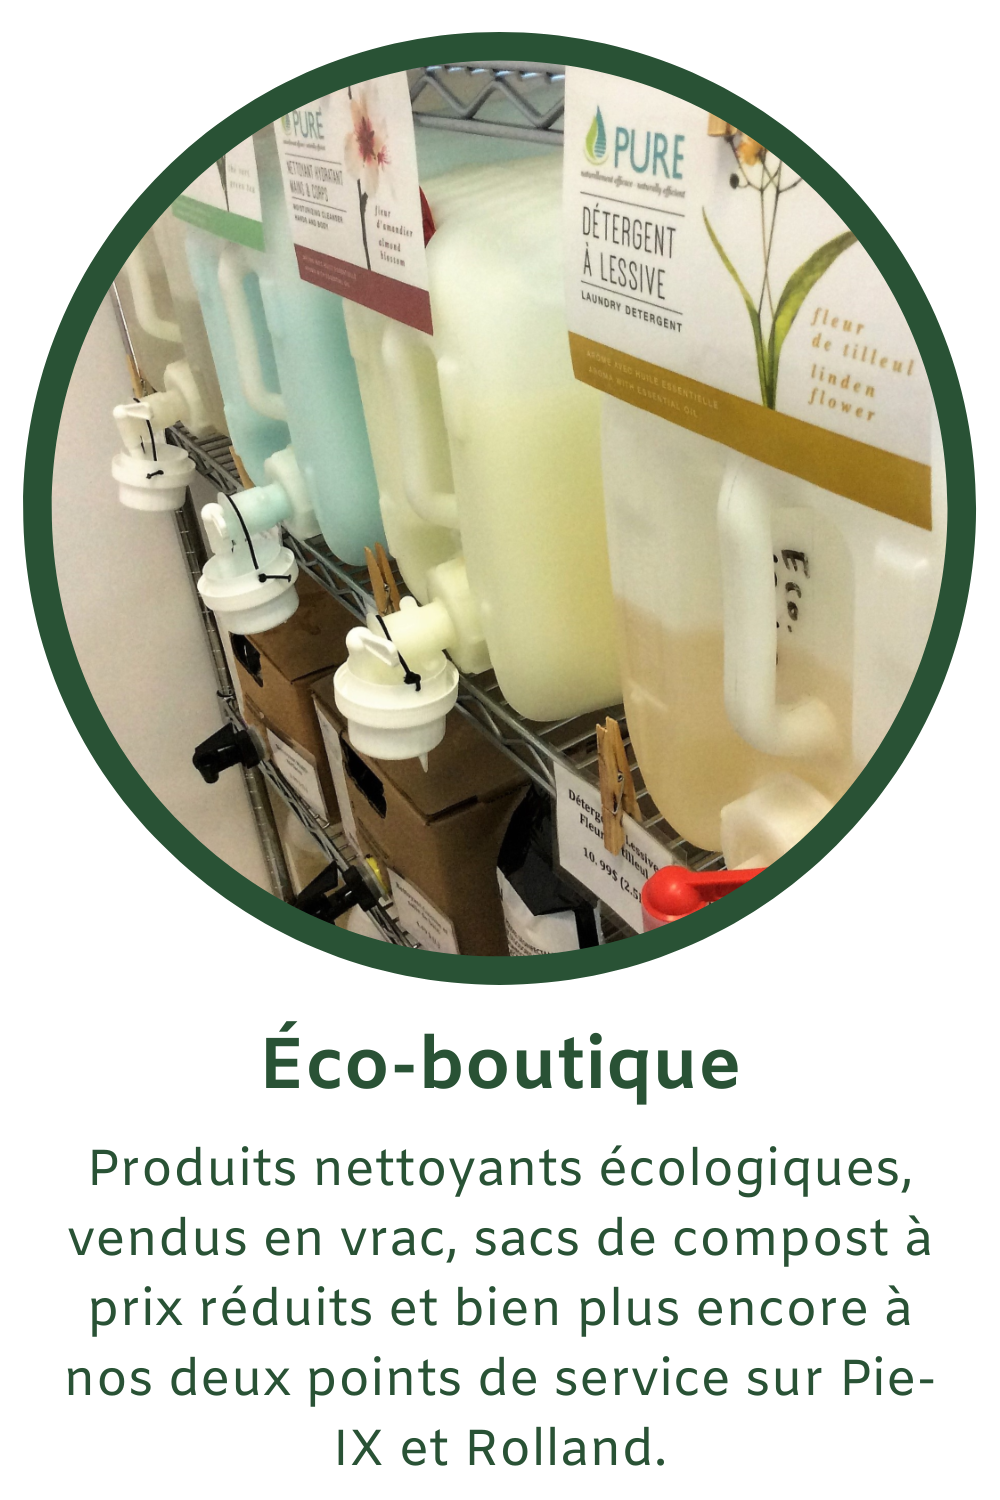 Produits nettoyants écologiques vendu en vrac, sacs de compost à prix réduits et bien plus encore à nos deux points de service sur Pie-IX et sur Rolland!"